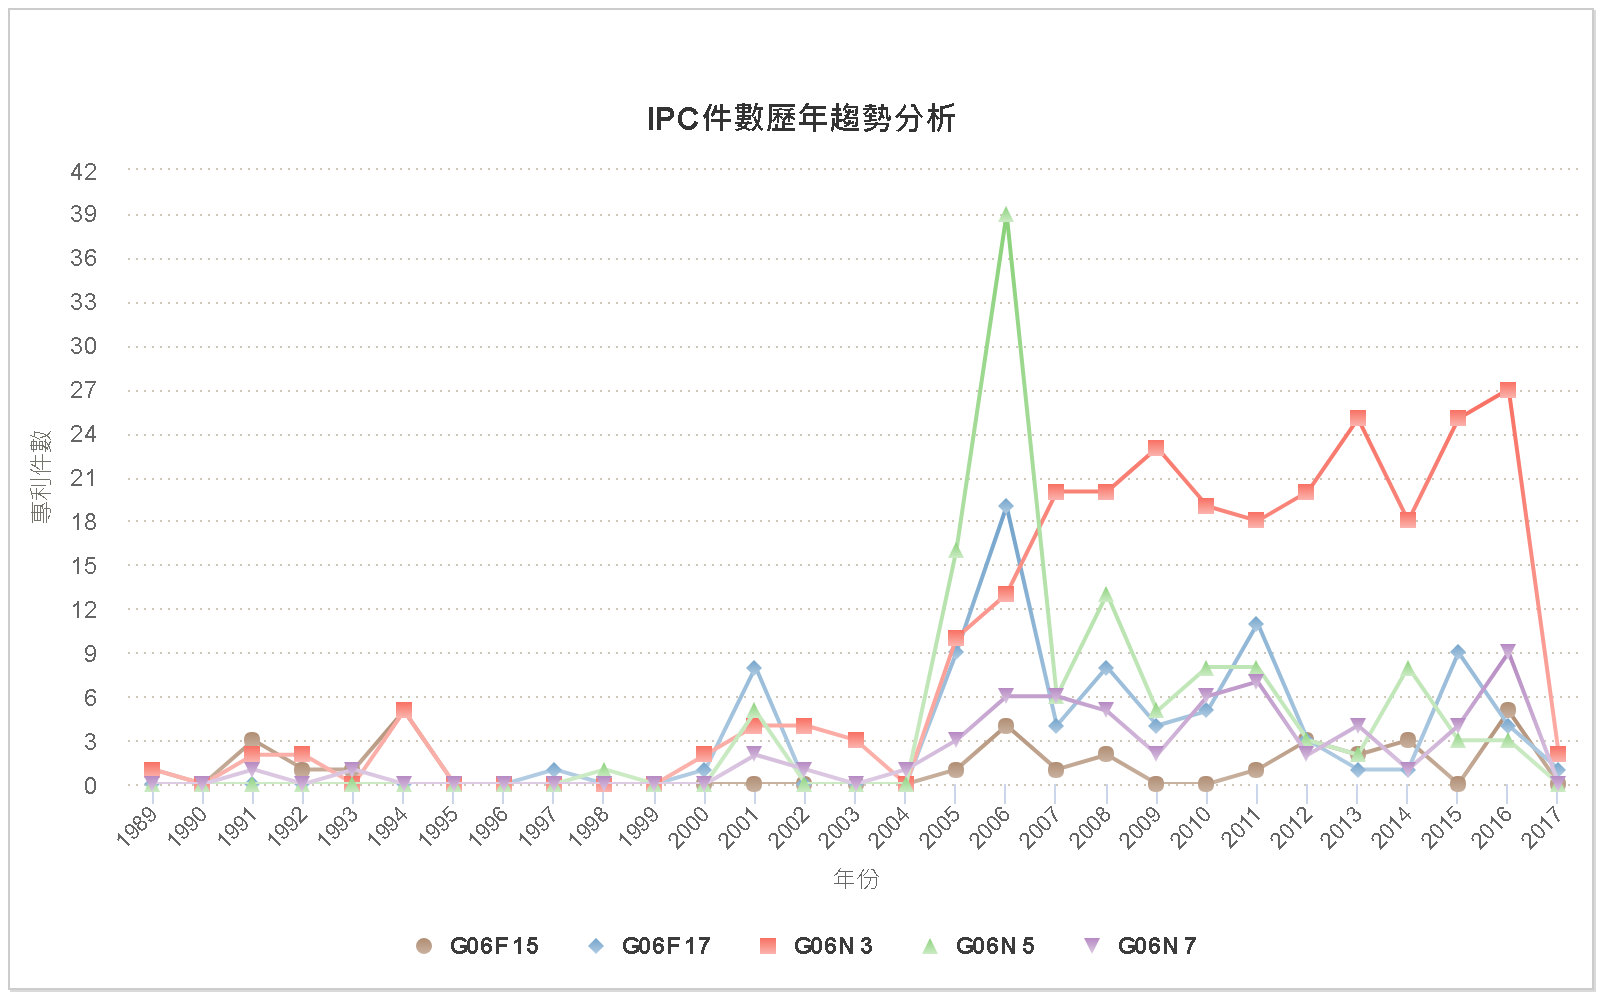 IPC件數歷年趨勢分析圖–臺灣